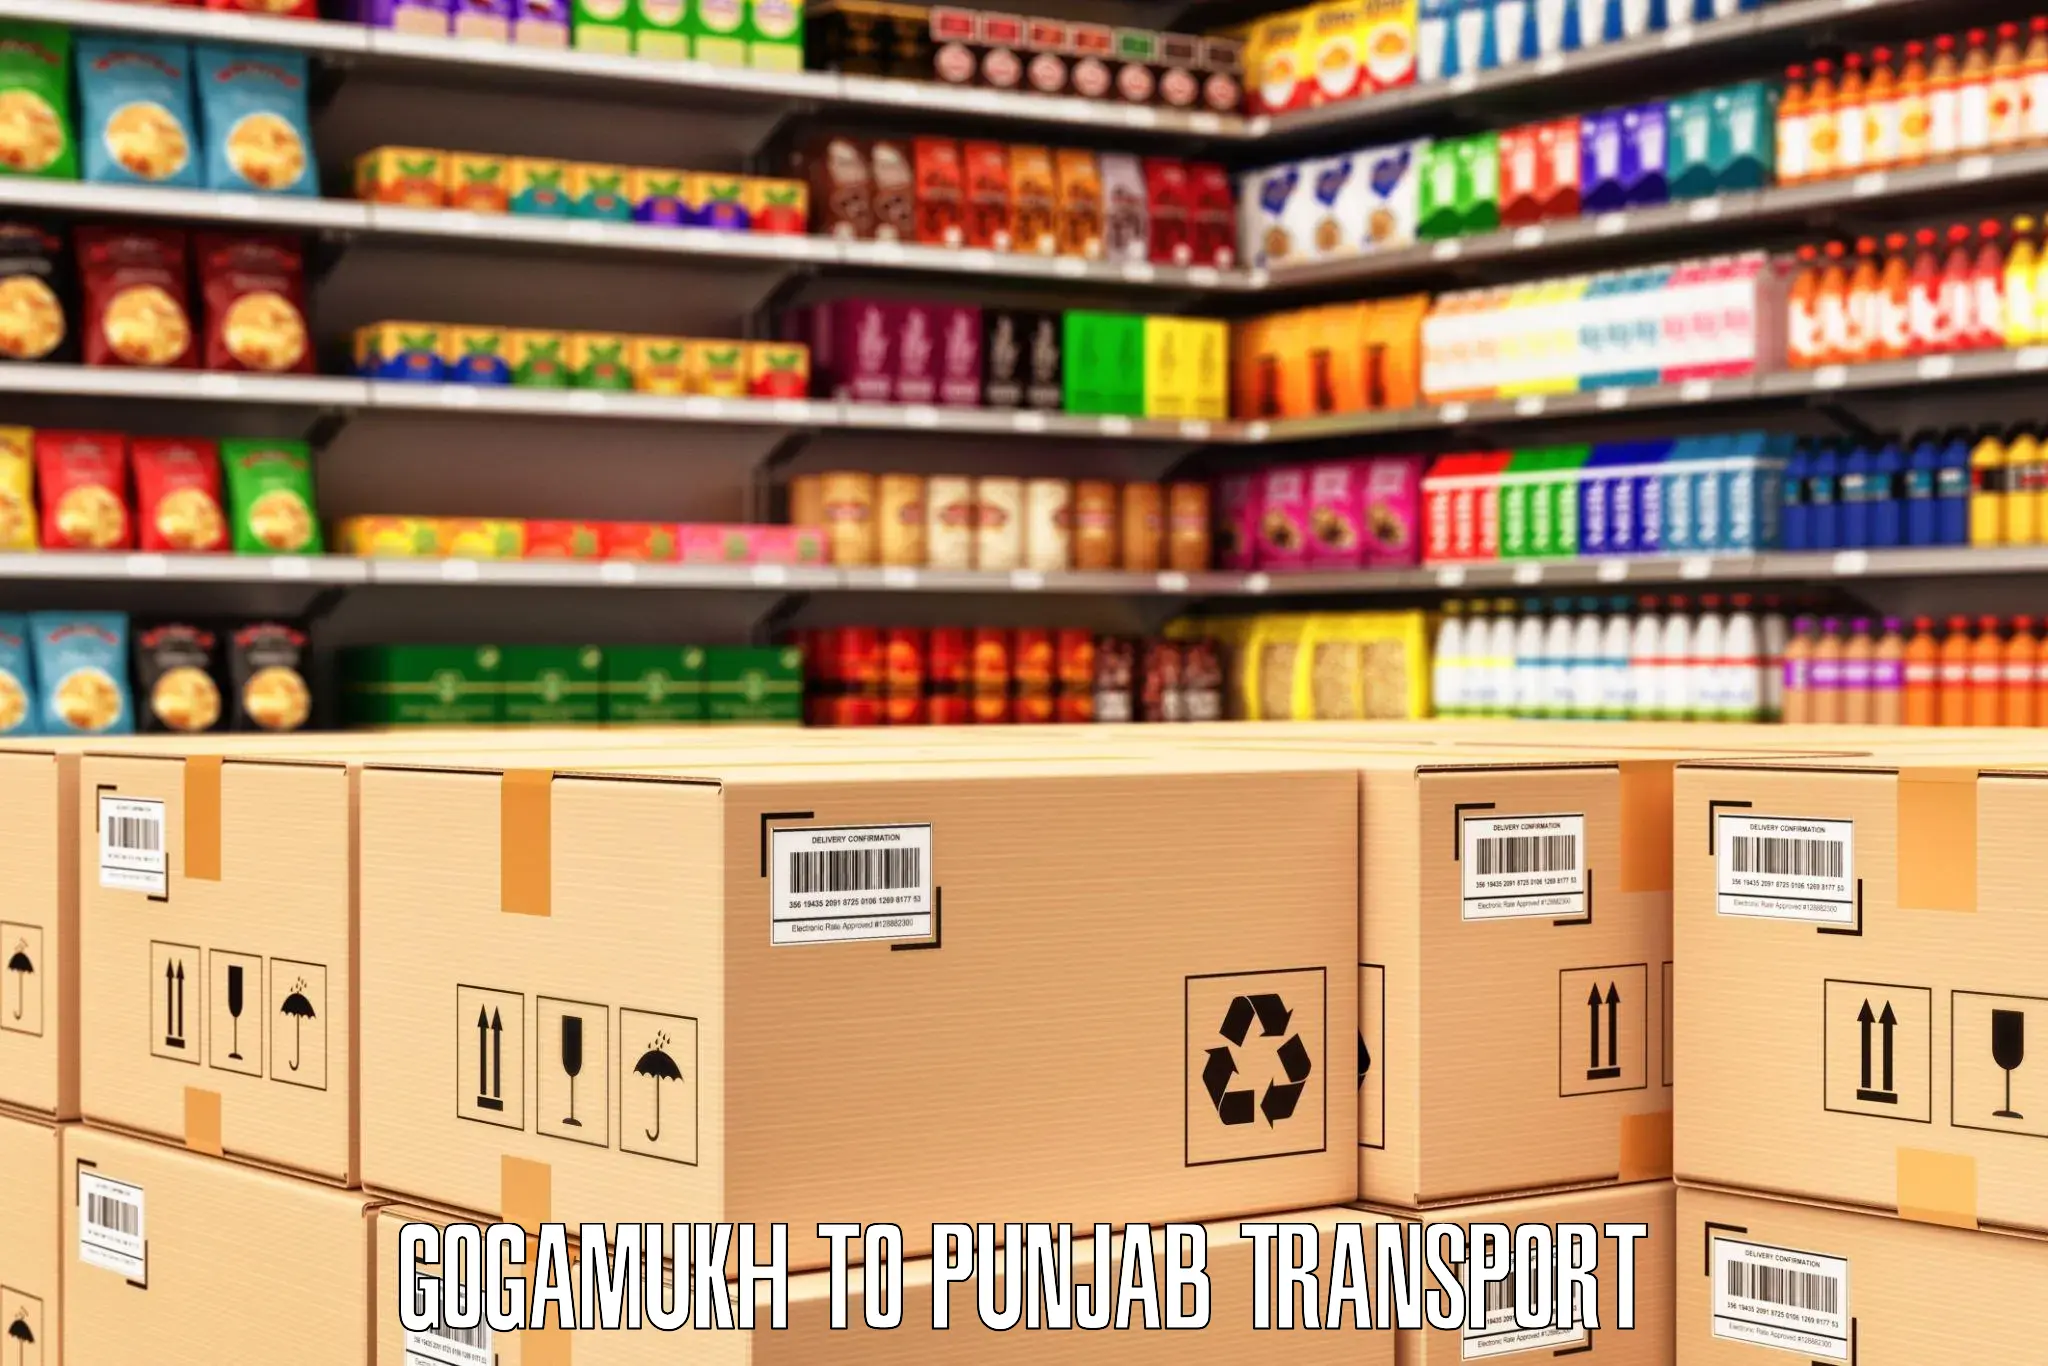 Transport shared services Gogamukh to Punjab